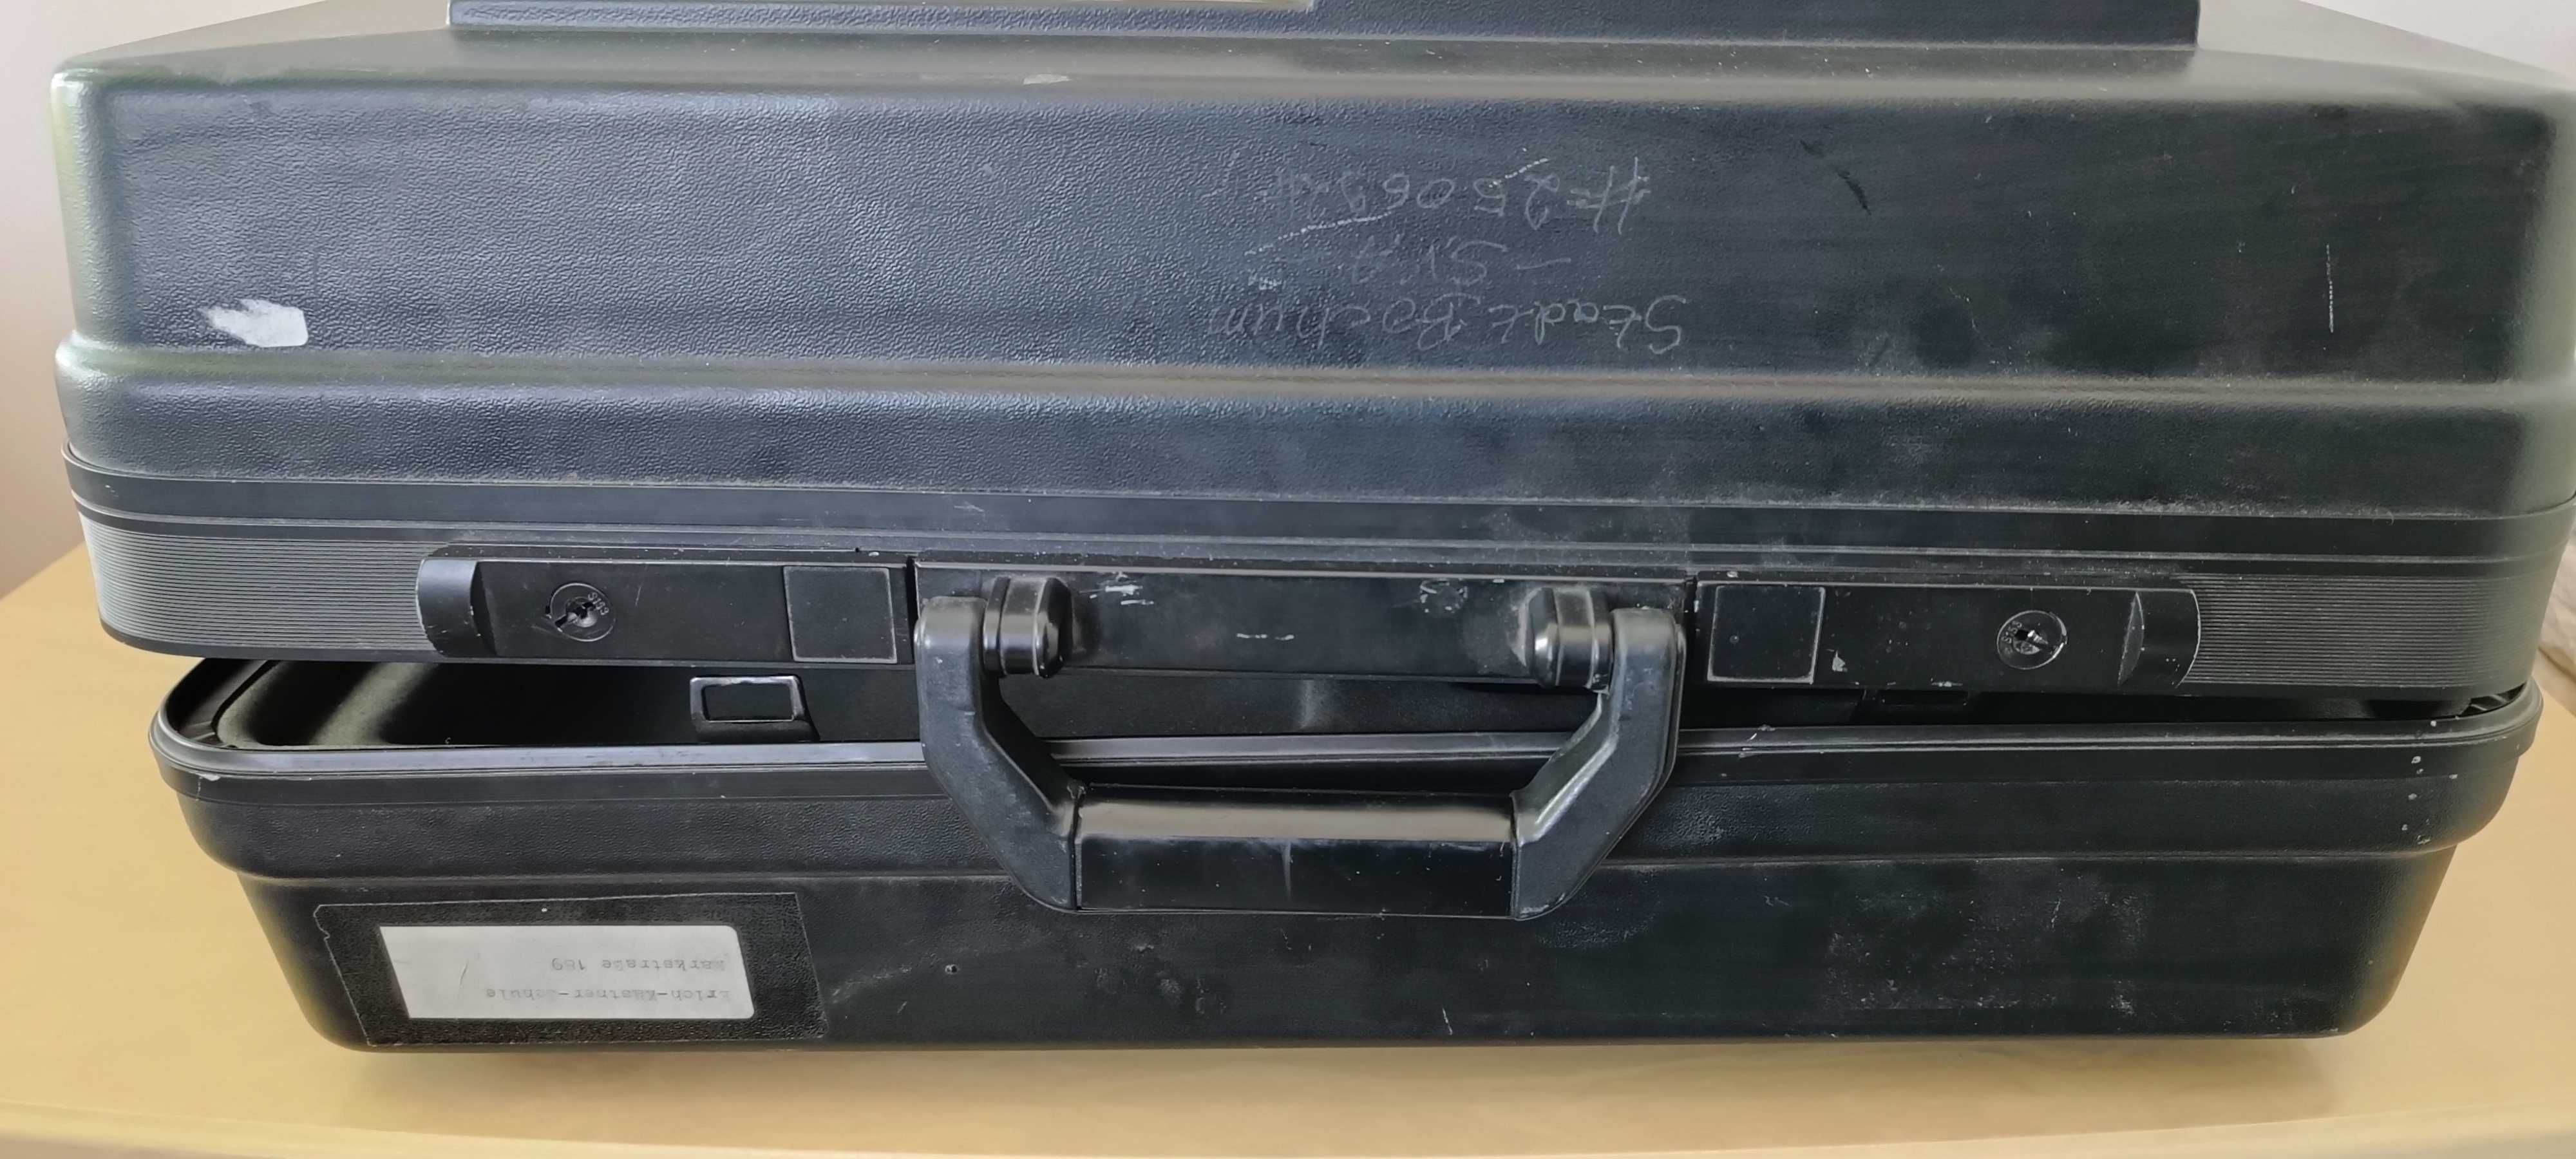 Захисний кейс сумка футляр для відеокамери Phillips Explorer VHS